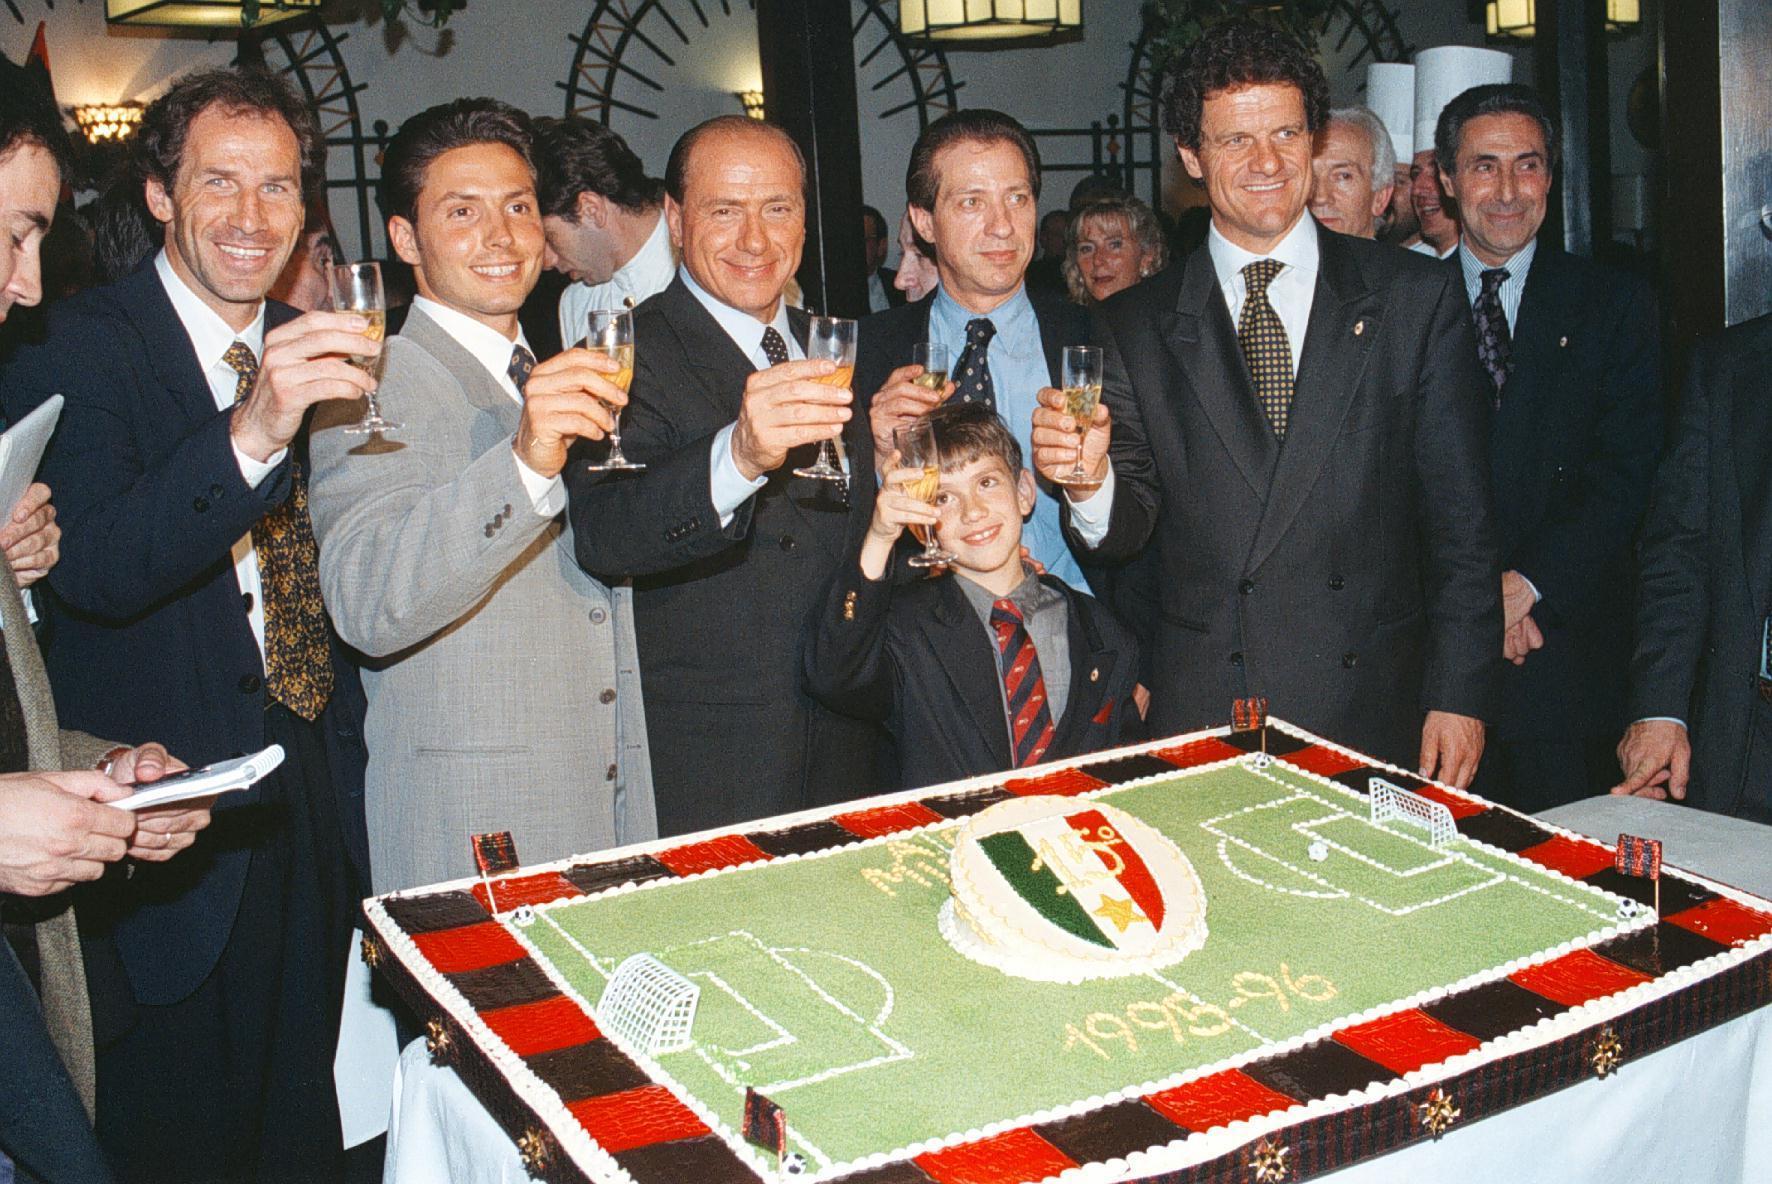 Il brindisi durante la cena organizzata dal Milan la sera dell'11 maggio 1996 per festeggiare la vittoria del campionato di calcio 95/96. Da sinistra Franco Baresi; Piersilvio, Silvio, Paolo e il piccolo Luigi Berlusconi; Fabio Capello.ANSA